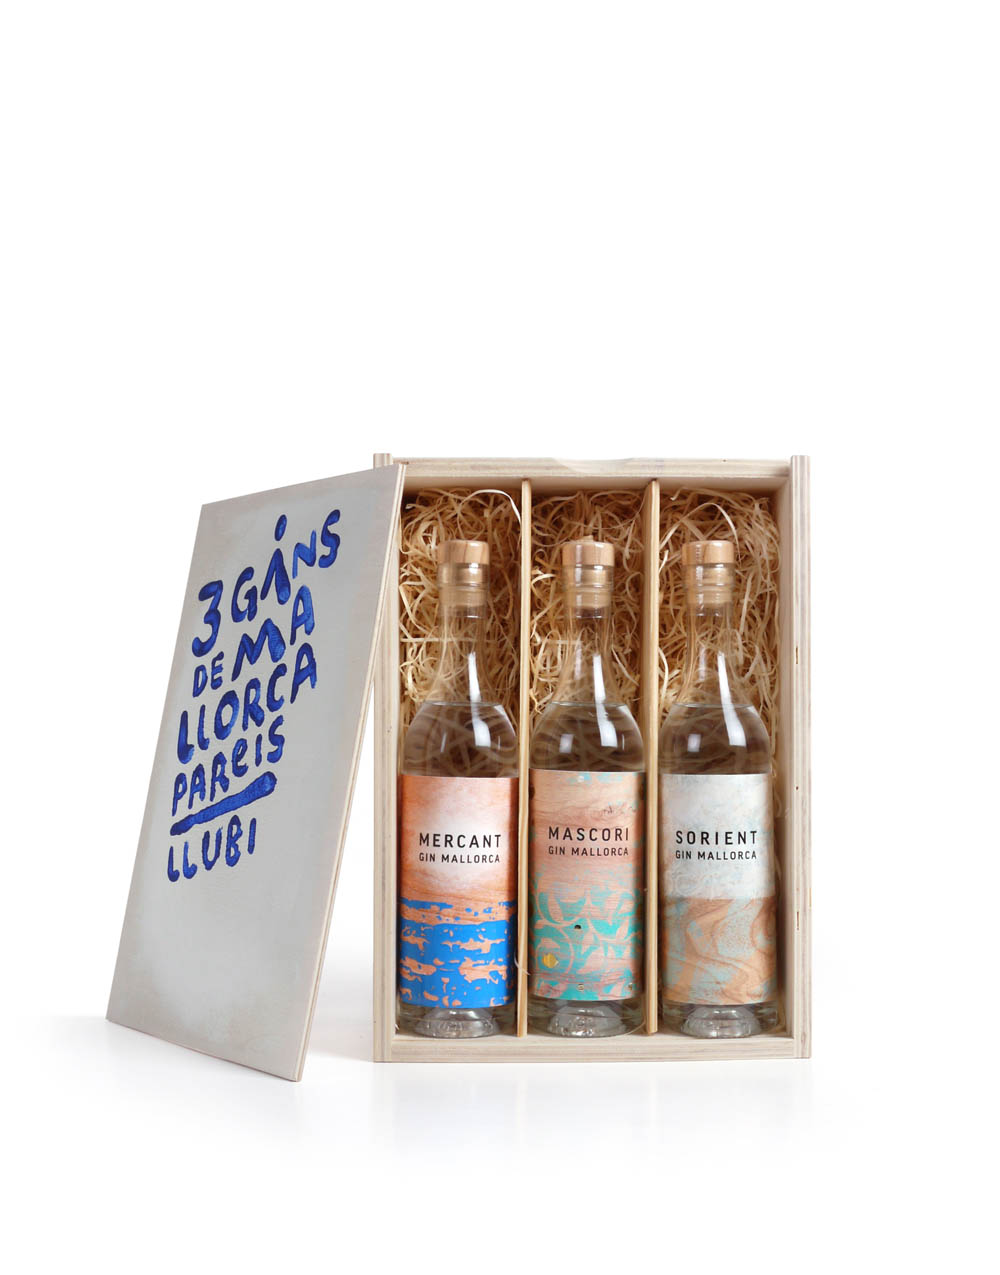 typisches-Geschenk-Mallorca-typical-gift-mallorca-Holzkiste-kleine-Gin-flaschen-wooden-box-small-gin-bottles-destileria-pareis